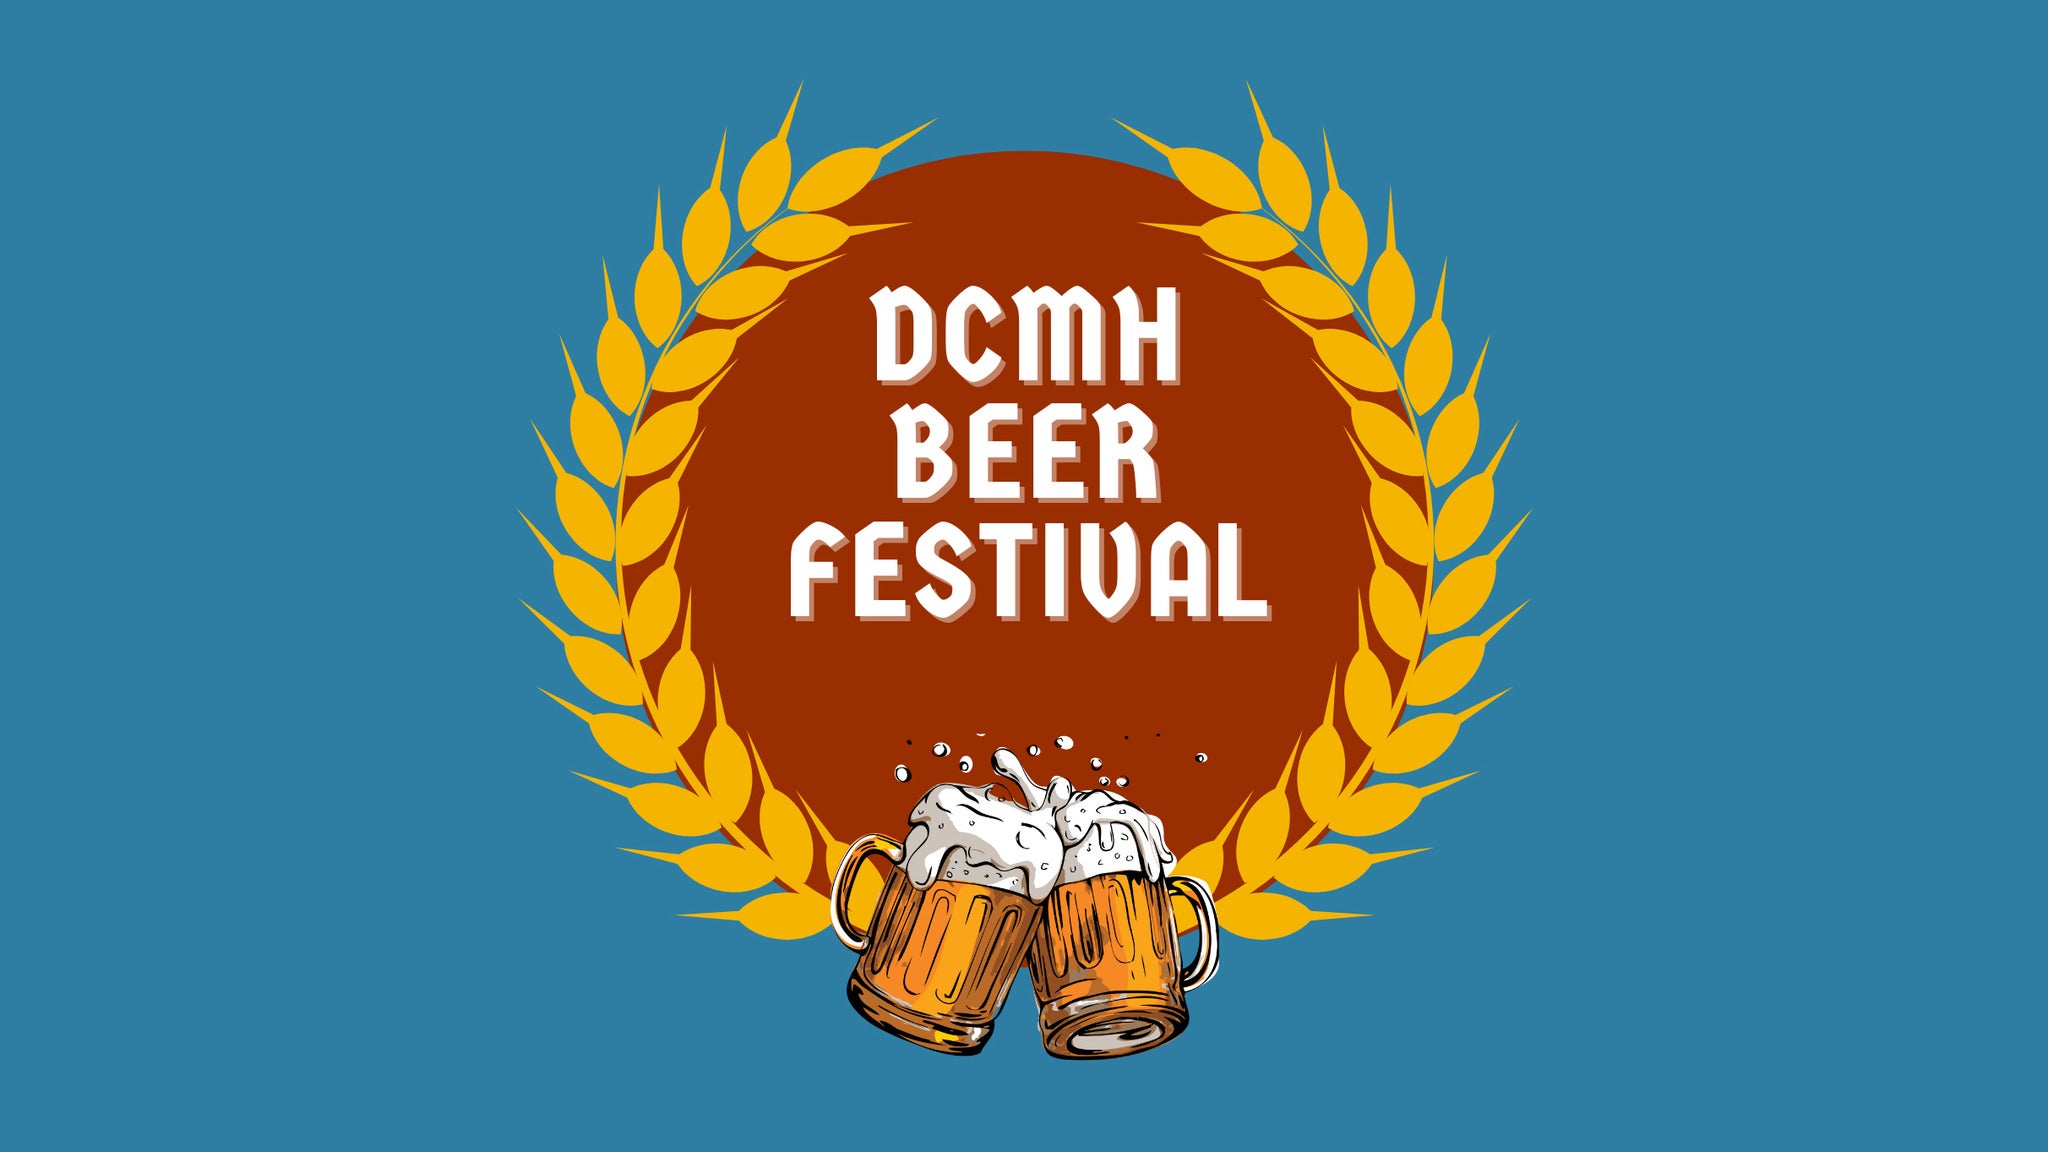 DCMH Beer Fest presale information on freepresalepasswords.com